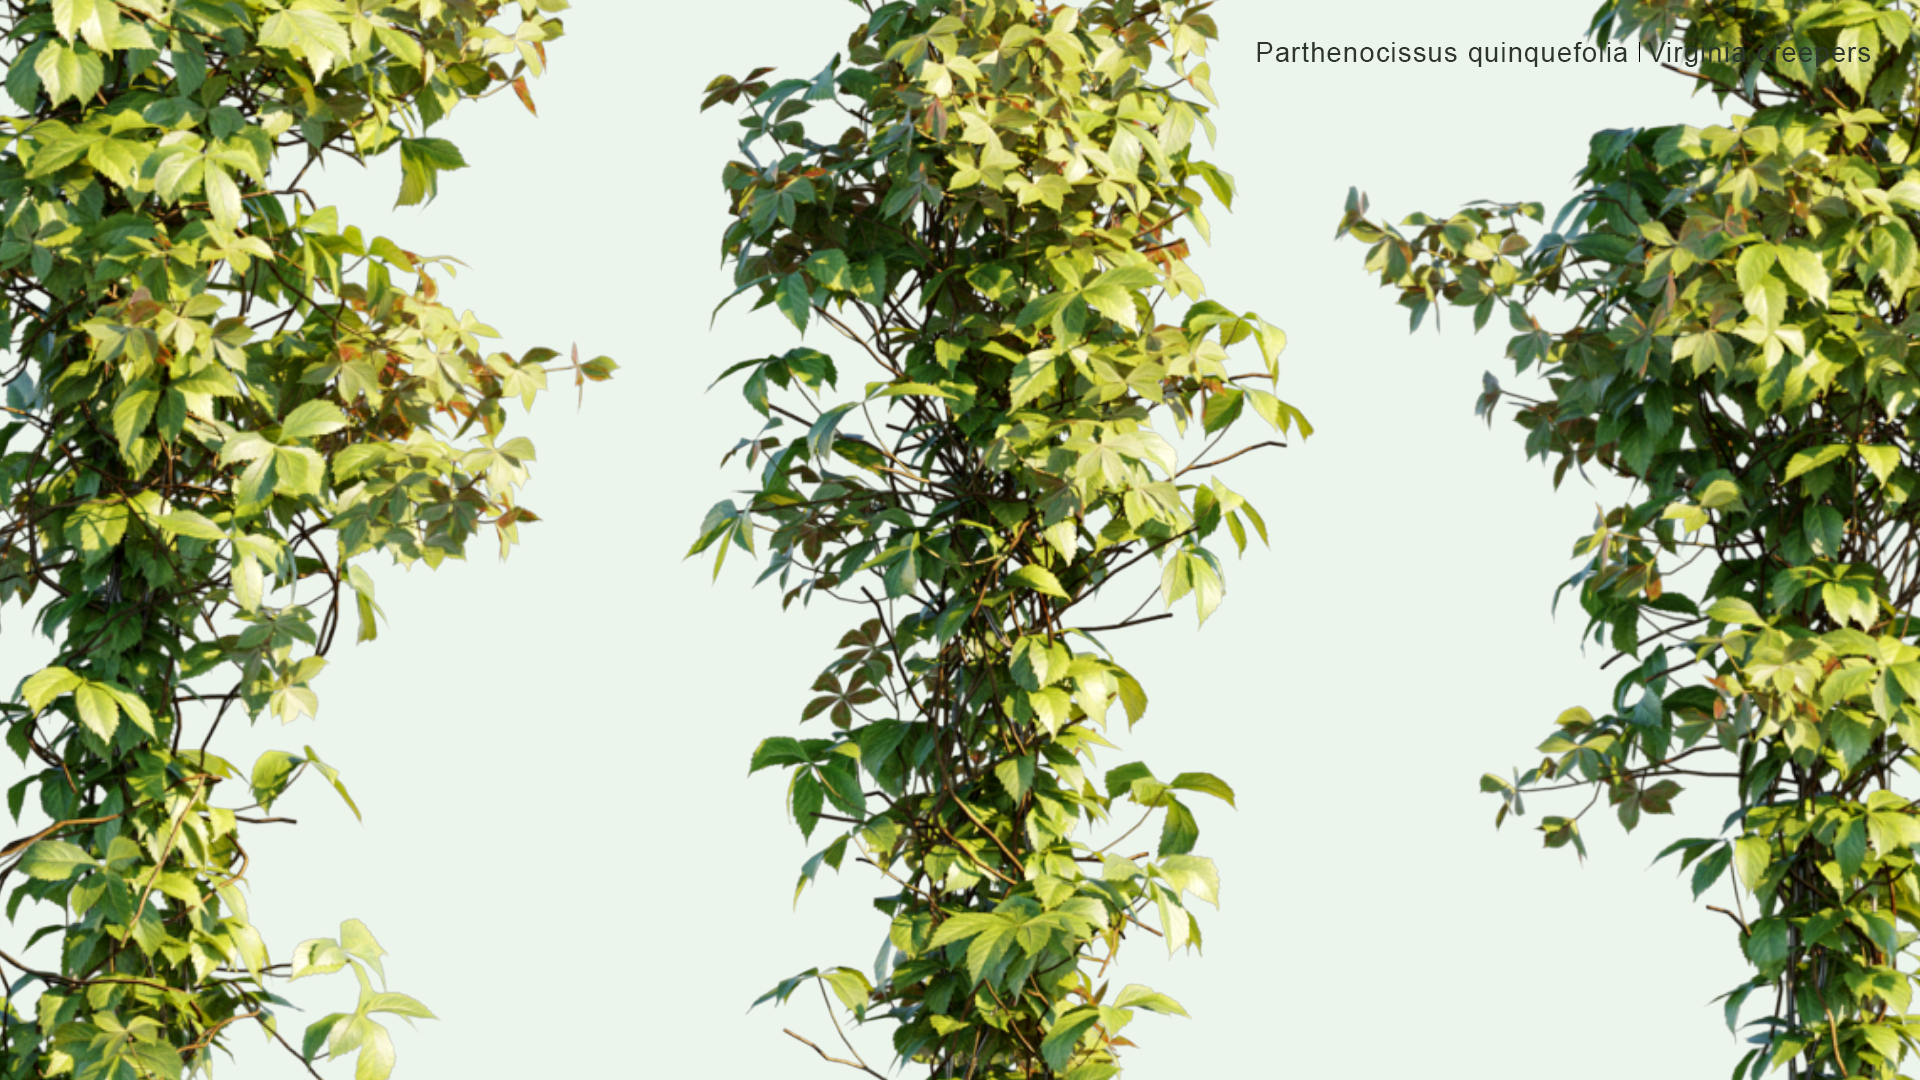 2D Parthenocissus Quinquefolia - Virginia Creepers